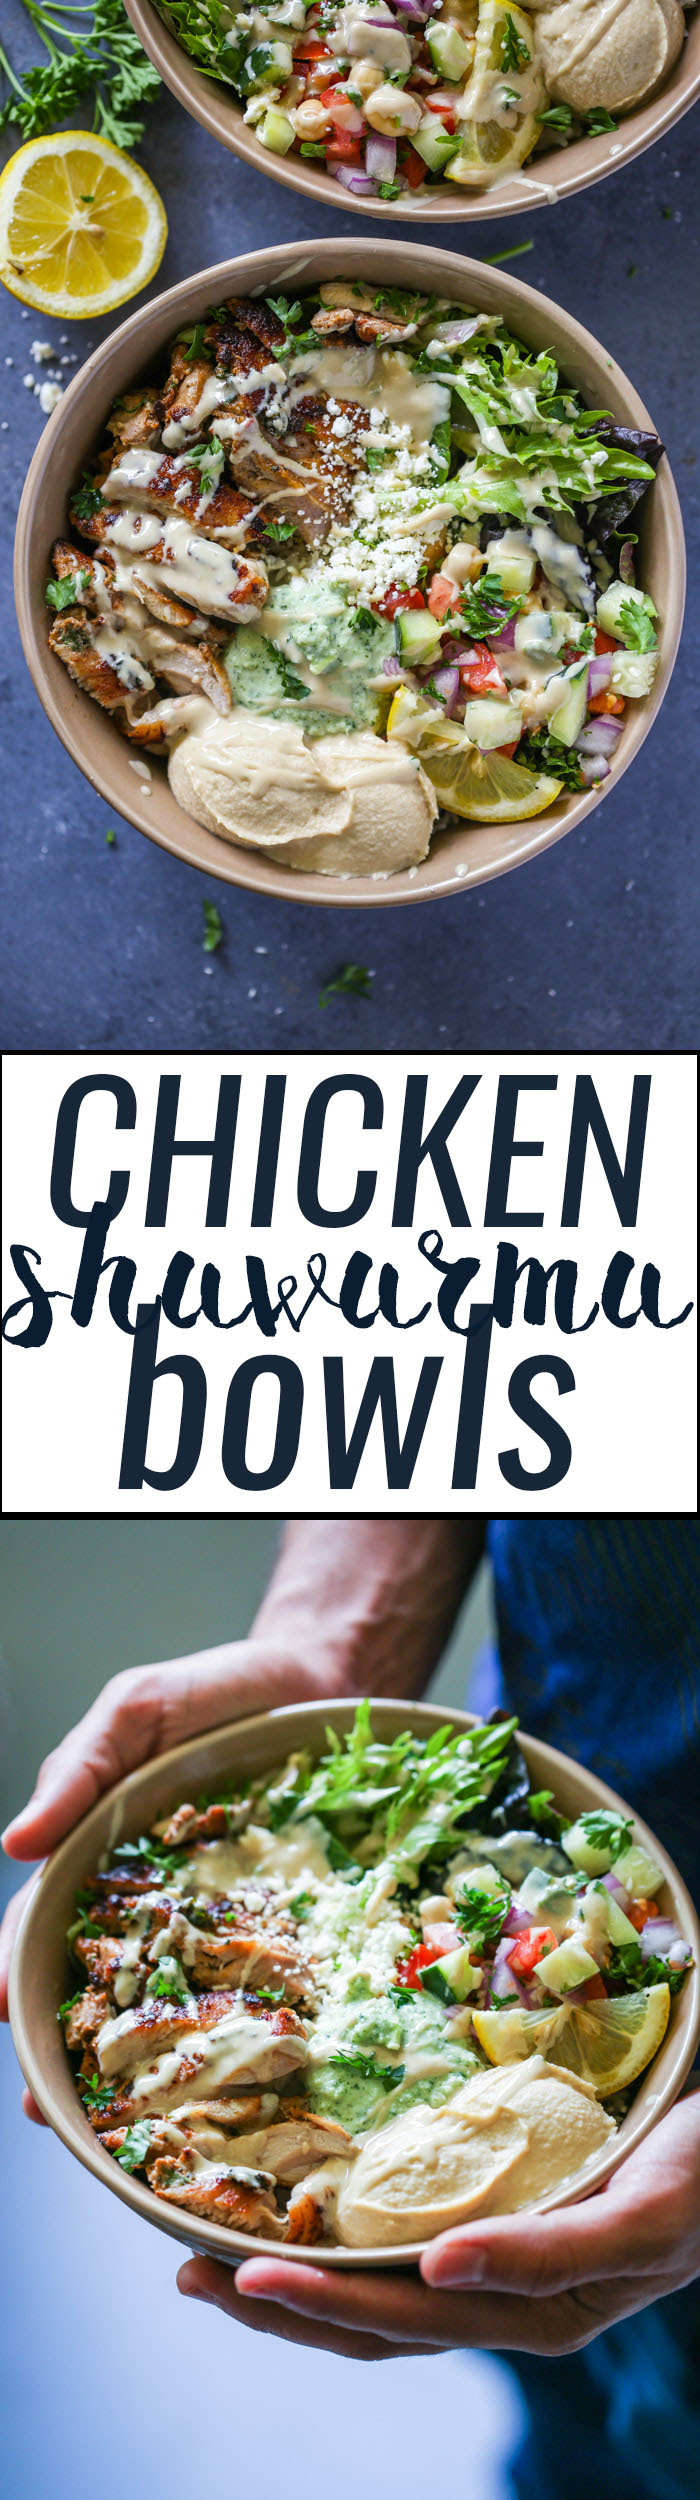 Healthy Chicken Shawarma Bowls